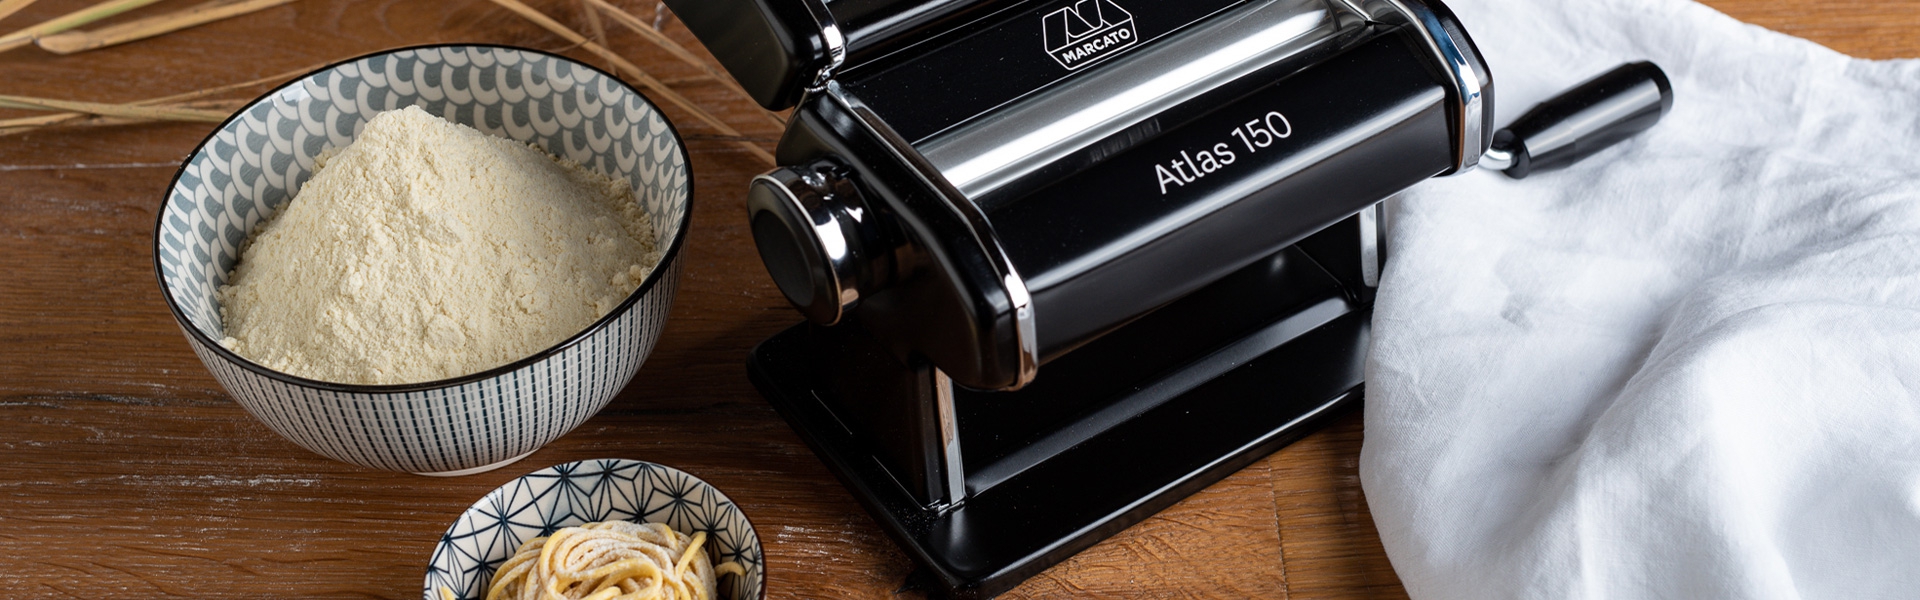 Atlas 150 Pasta Machine Black